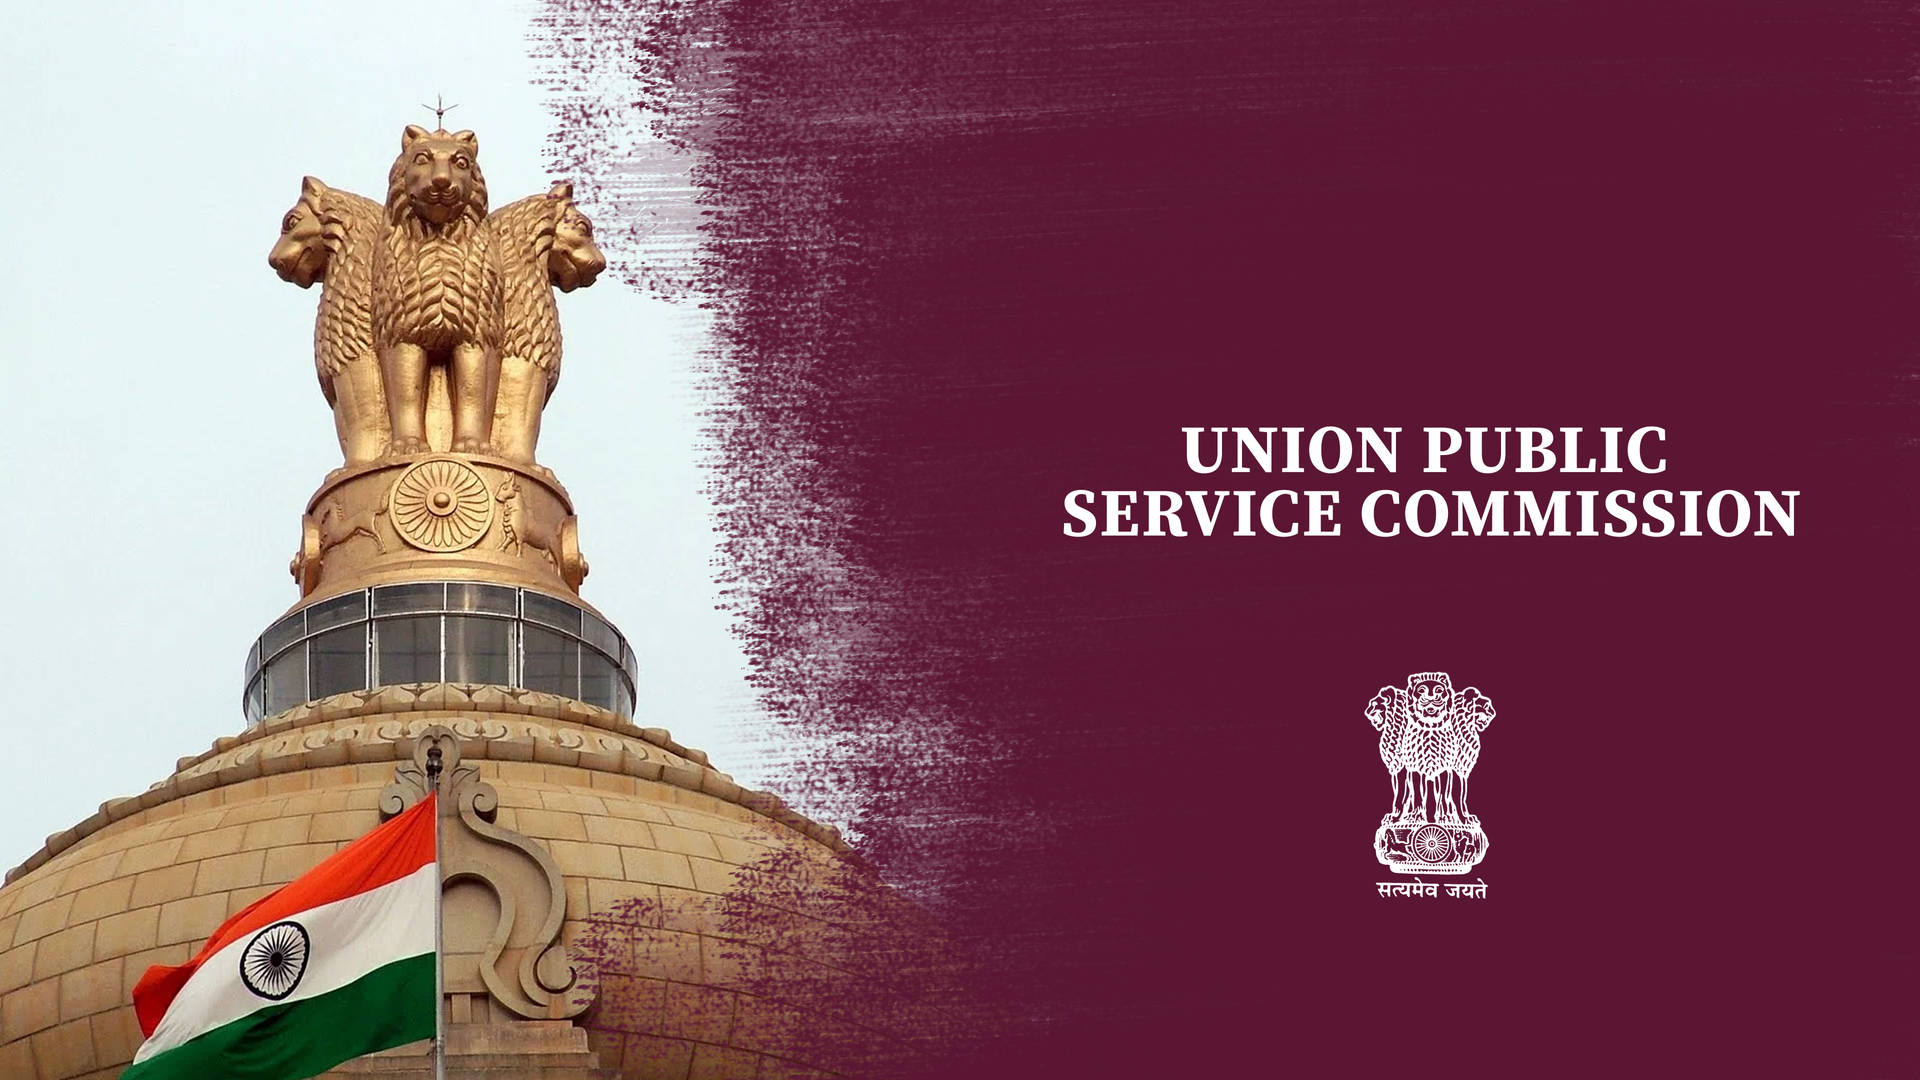 Union Public Service Commission (upsc) Statue